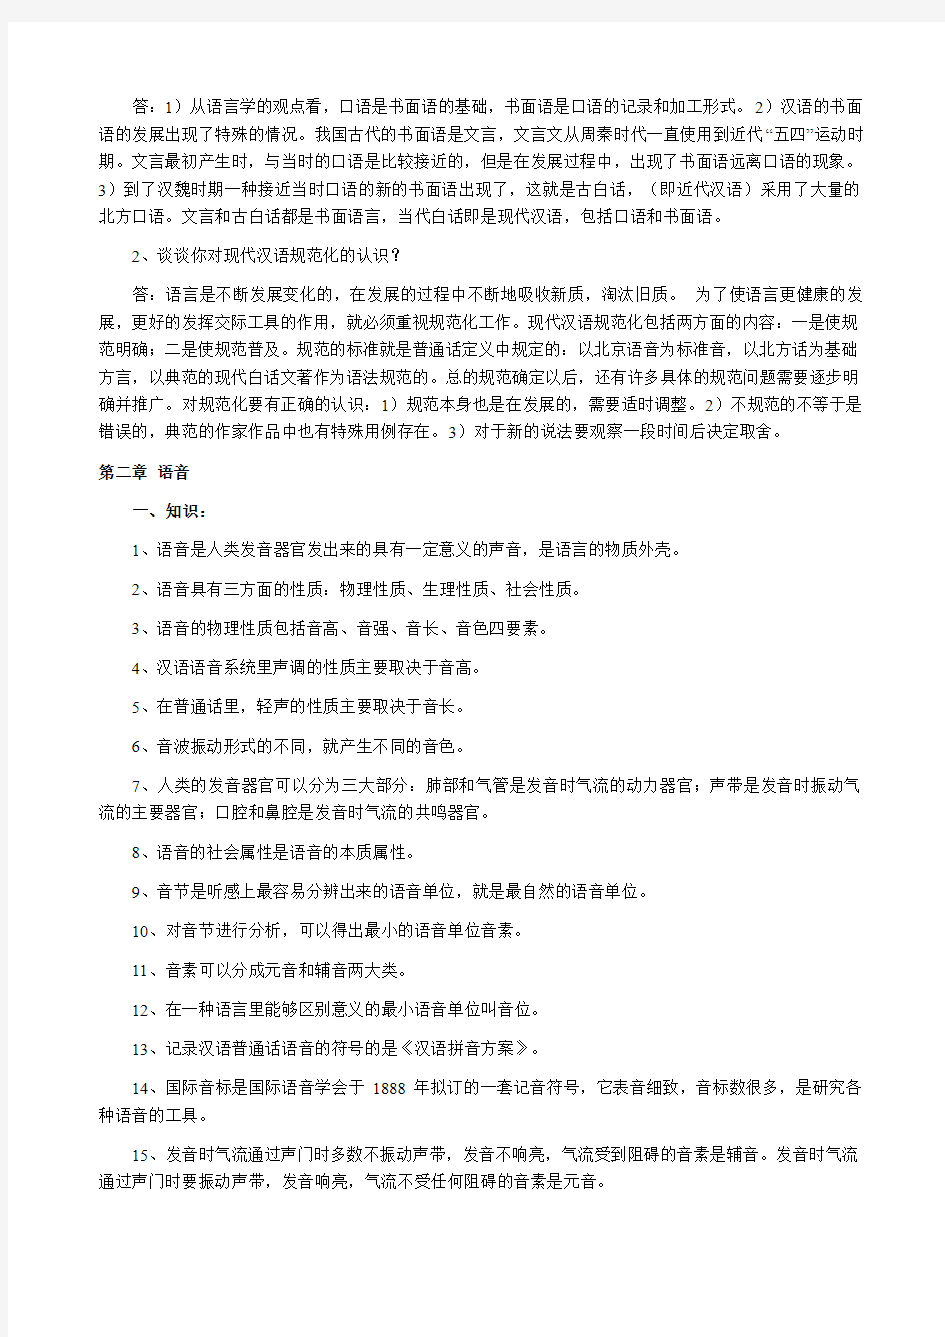 现代汉语笔记(整理后)打印[1]1